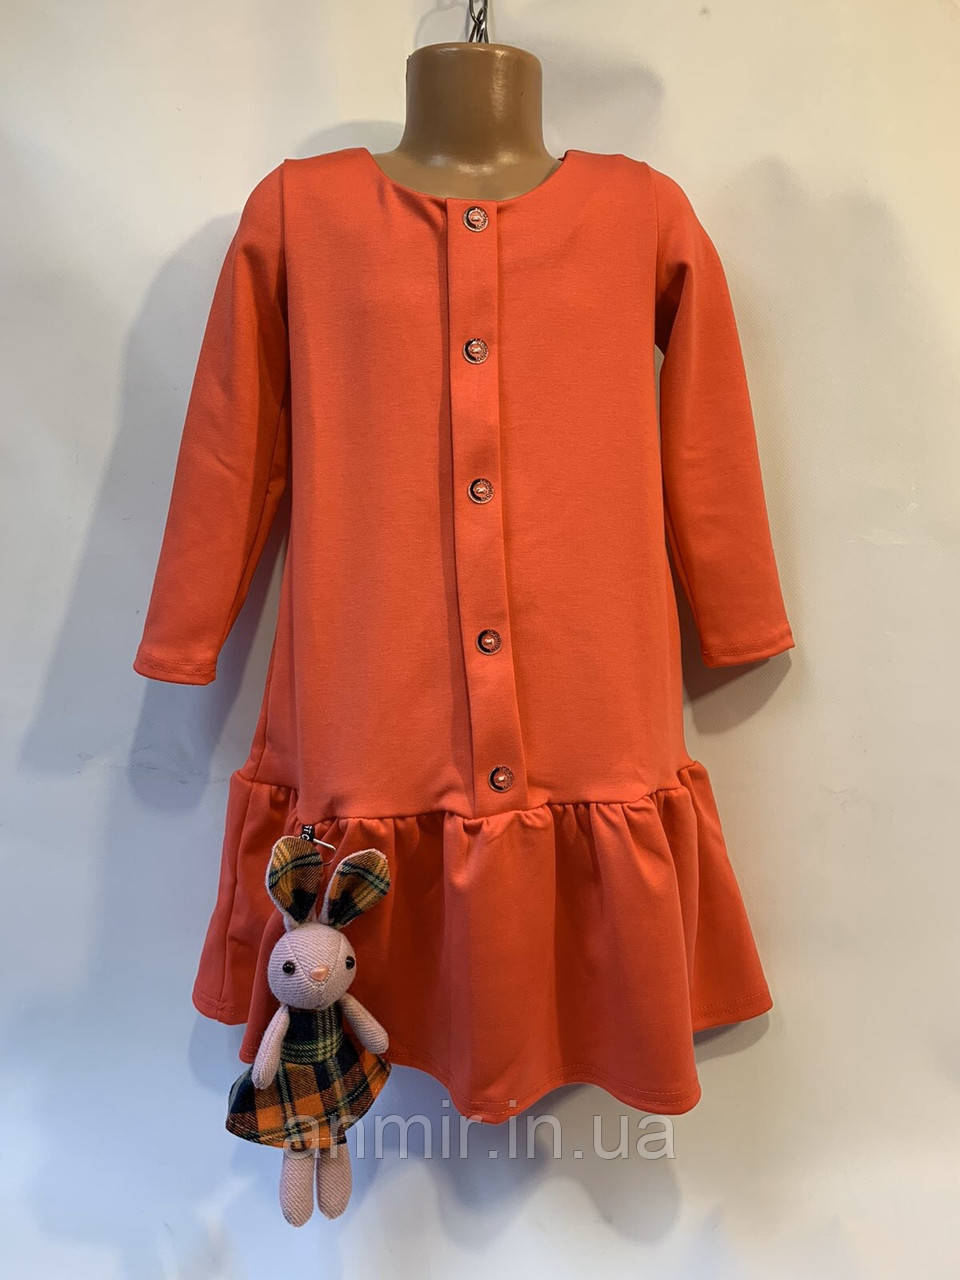 Дитяче плаття для дівчинки з іграшкою в карту 5-8 років, оранжевого кольору